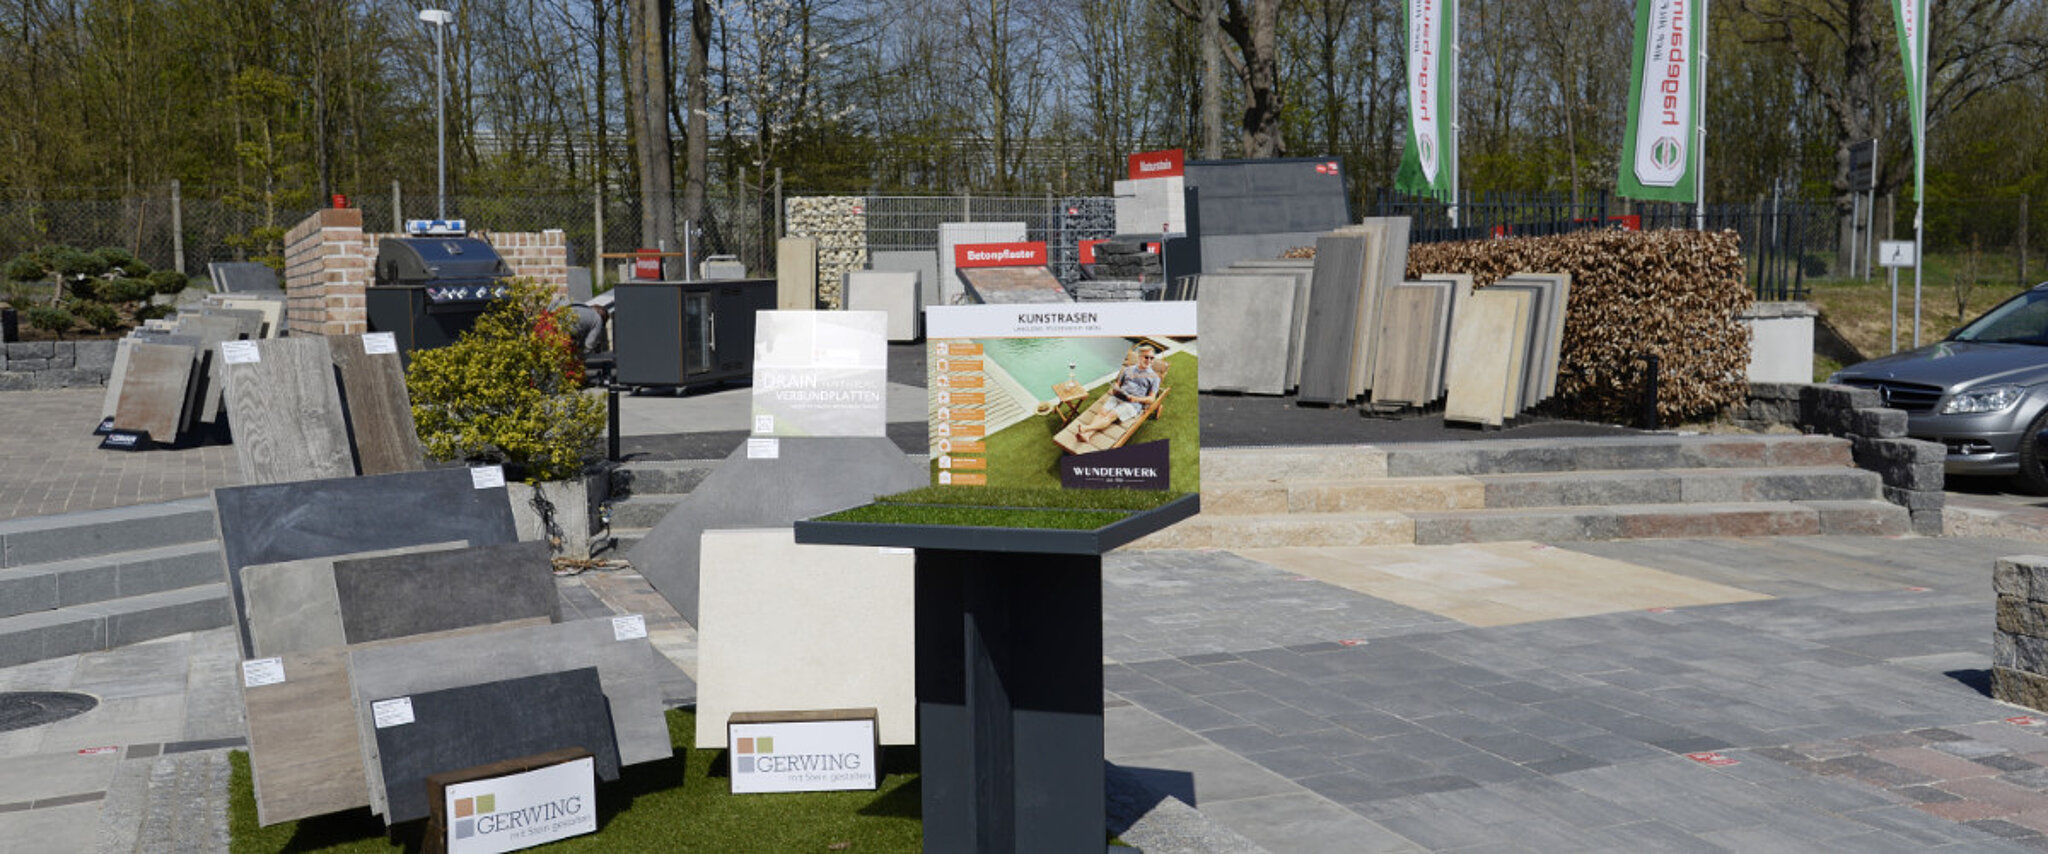 Standort Baucentrum Lüneburg Außenausstellung mit diversen Bodenplatten